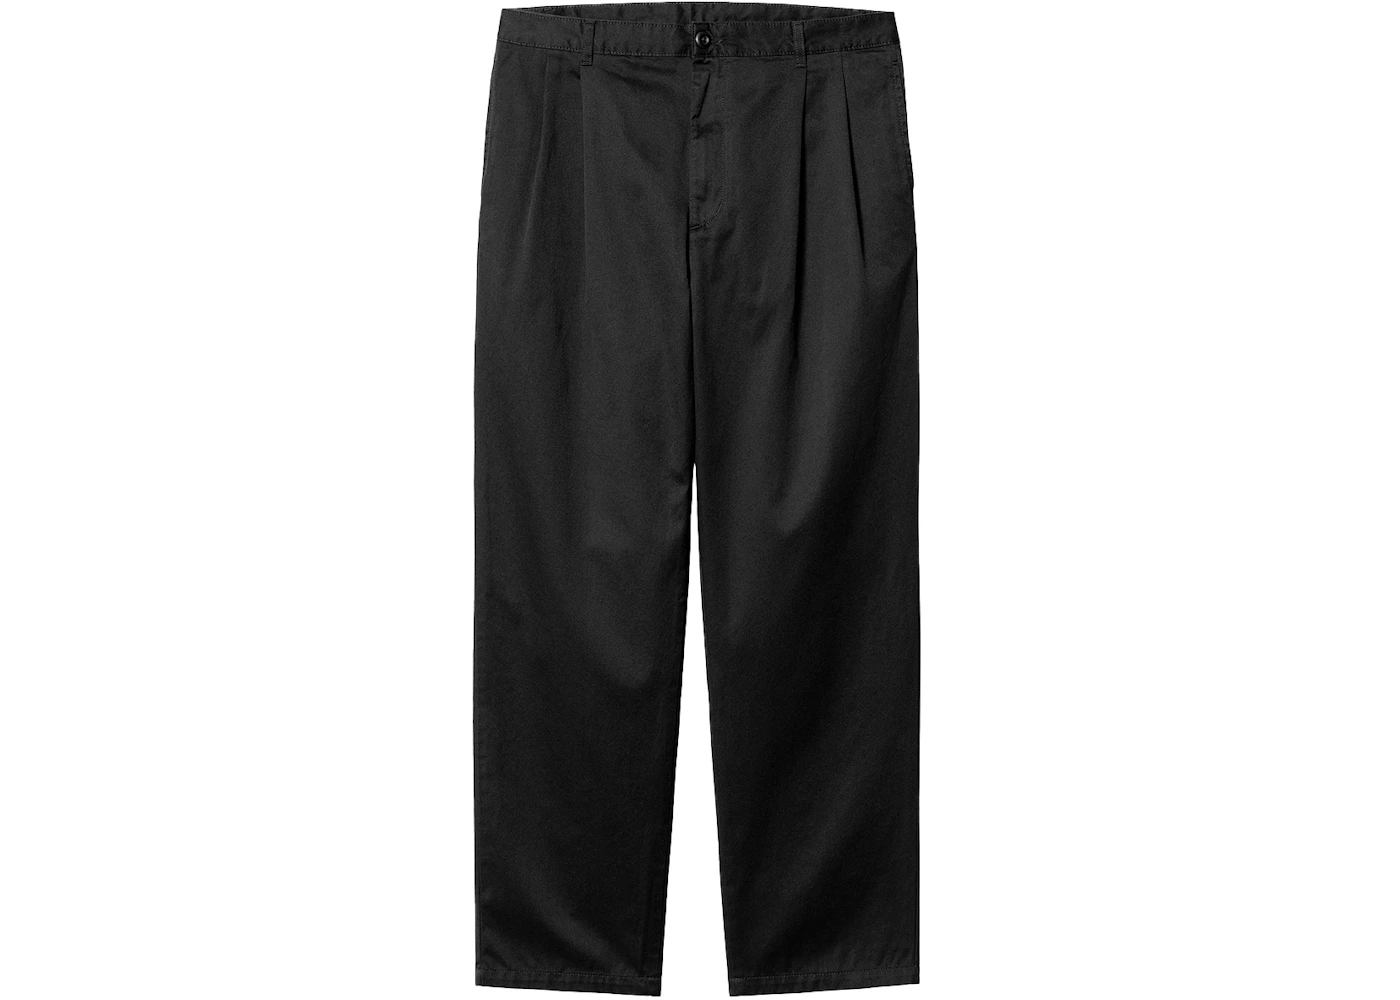 Carhartt WIP Salford Pants Black (Rinsed) Men's - SS22 - US